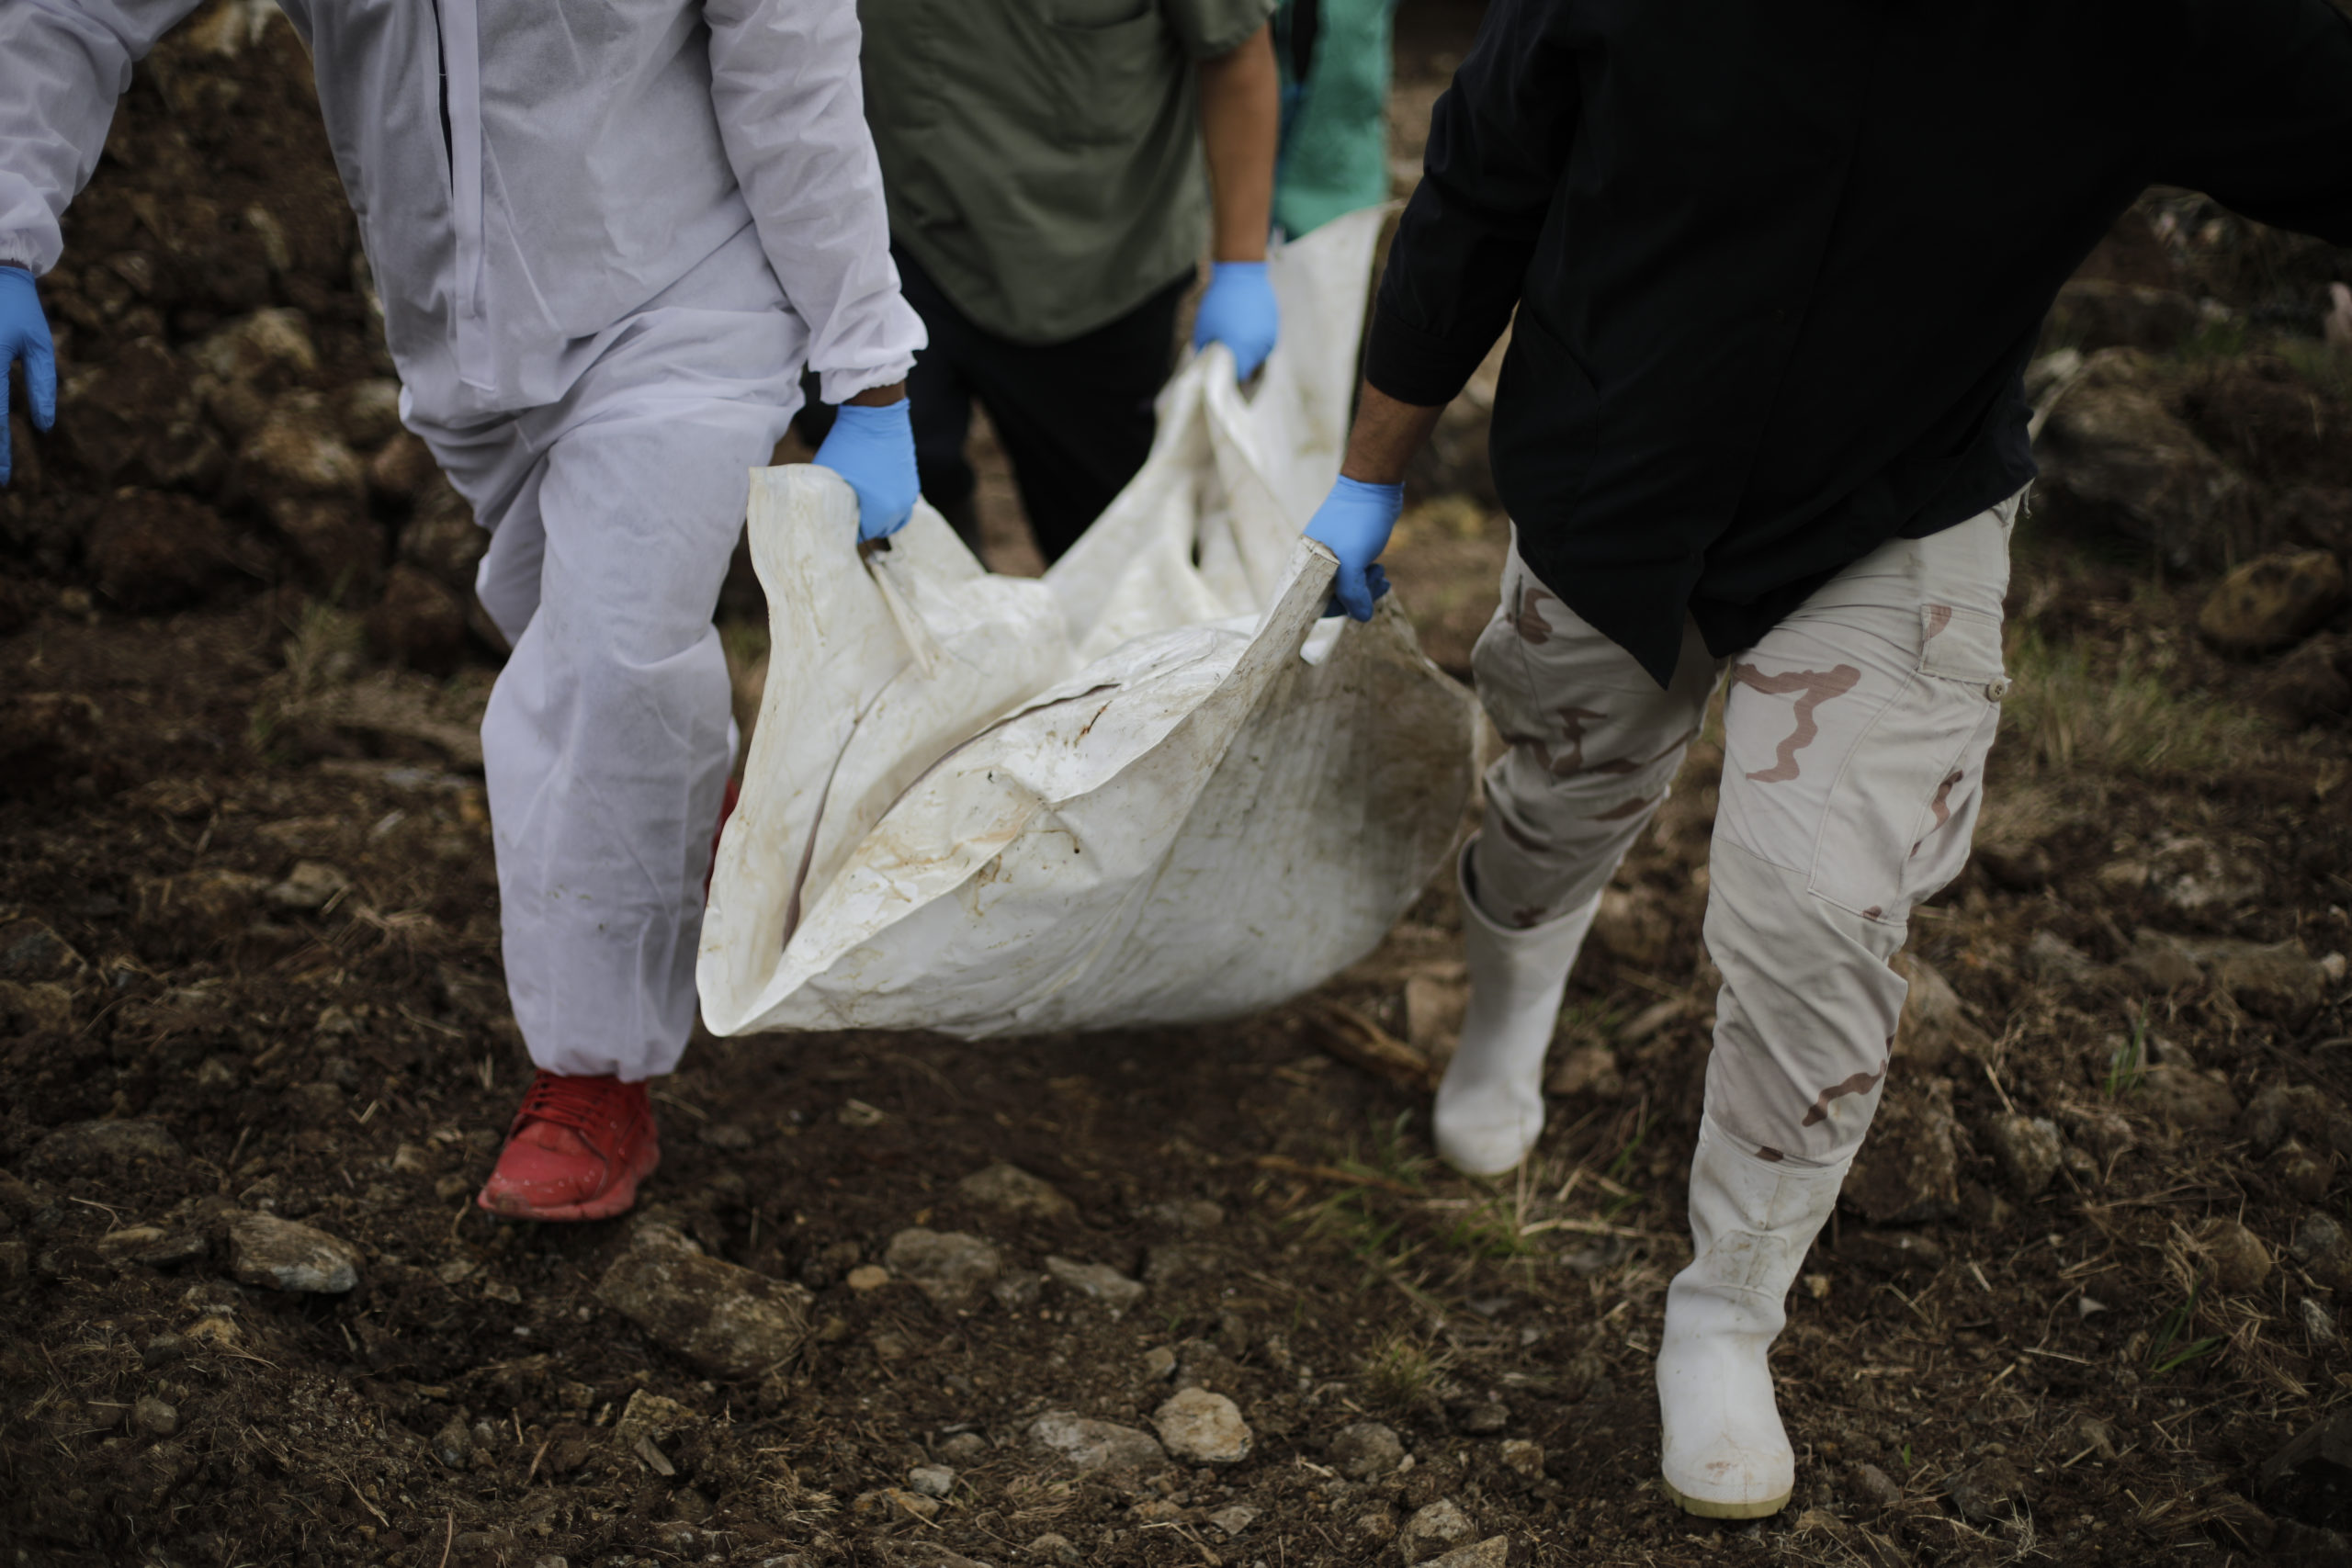 Miembros de medicina forense cargan una bolsa que contiene un cuerpo no reclamado. Foto CC/Jorge Cabrera